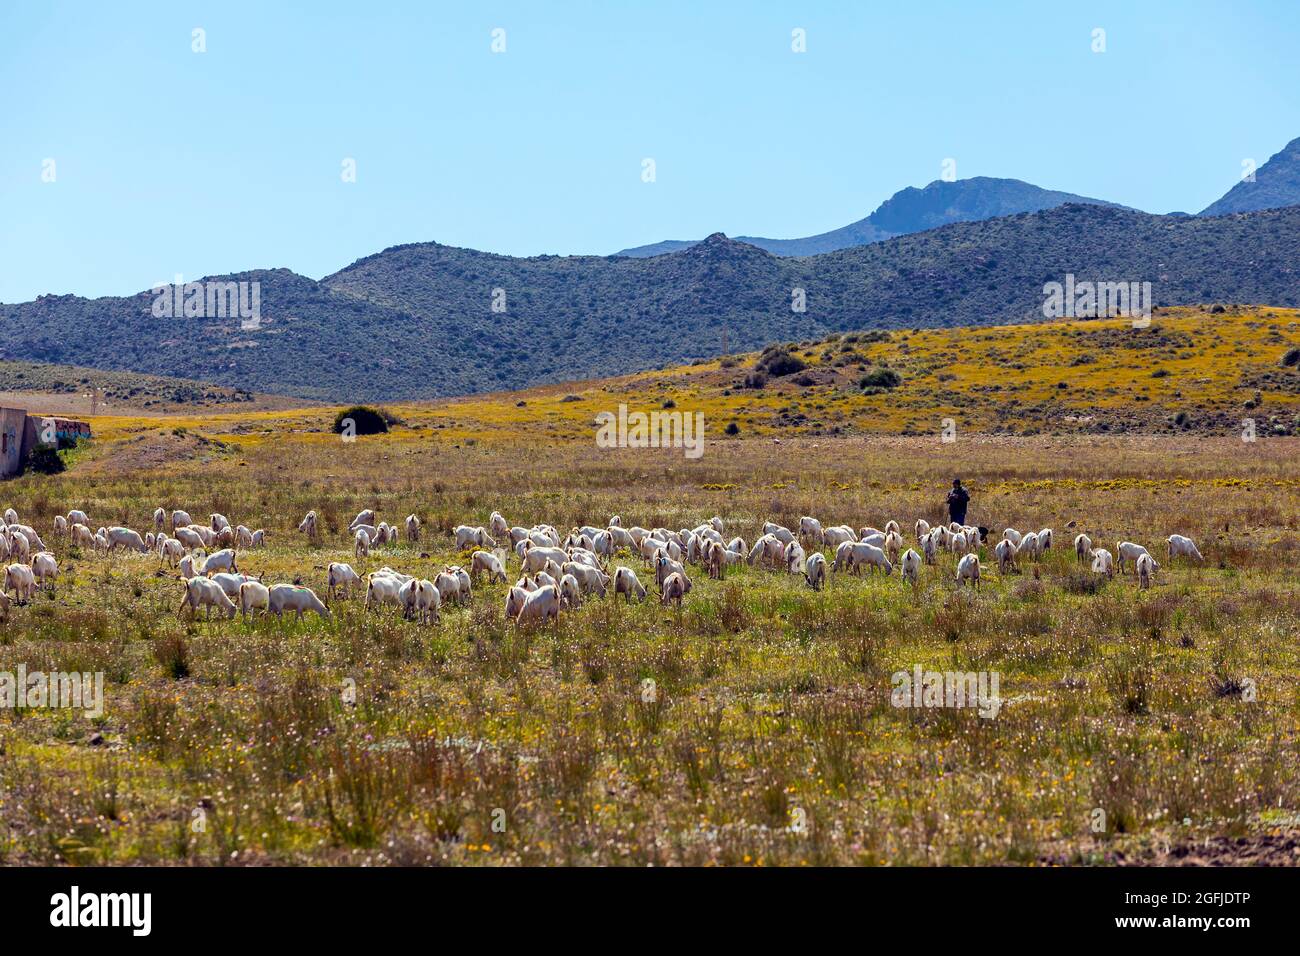 Paysage de la zone côtière Cabo de Gata, province d'Almeria, Andalousie, Espagne. Éleveur et troupeau de moutons dans les montagnes, dans le désert de Tabernas Banque D'Images